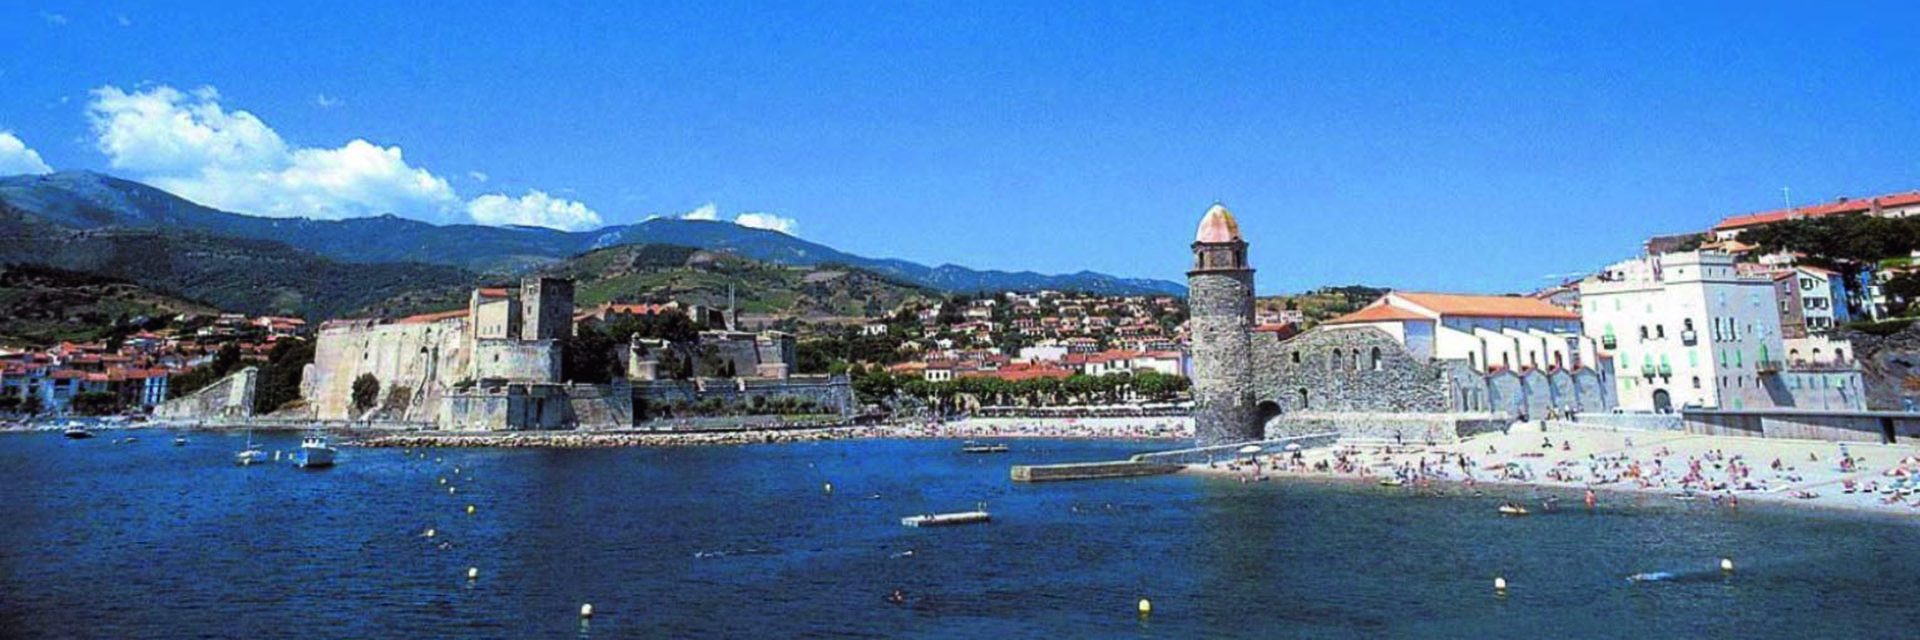 Torre del Far - Village Vacances Cap France